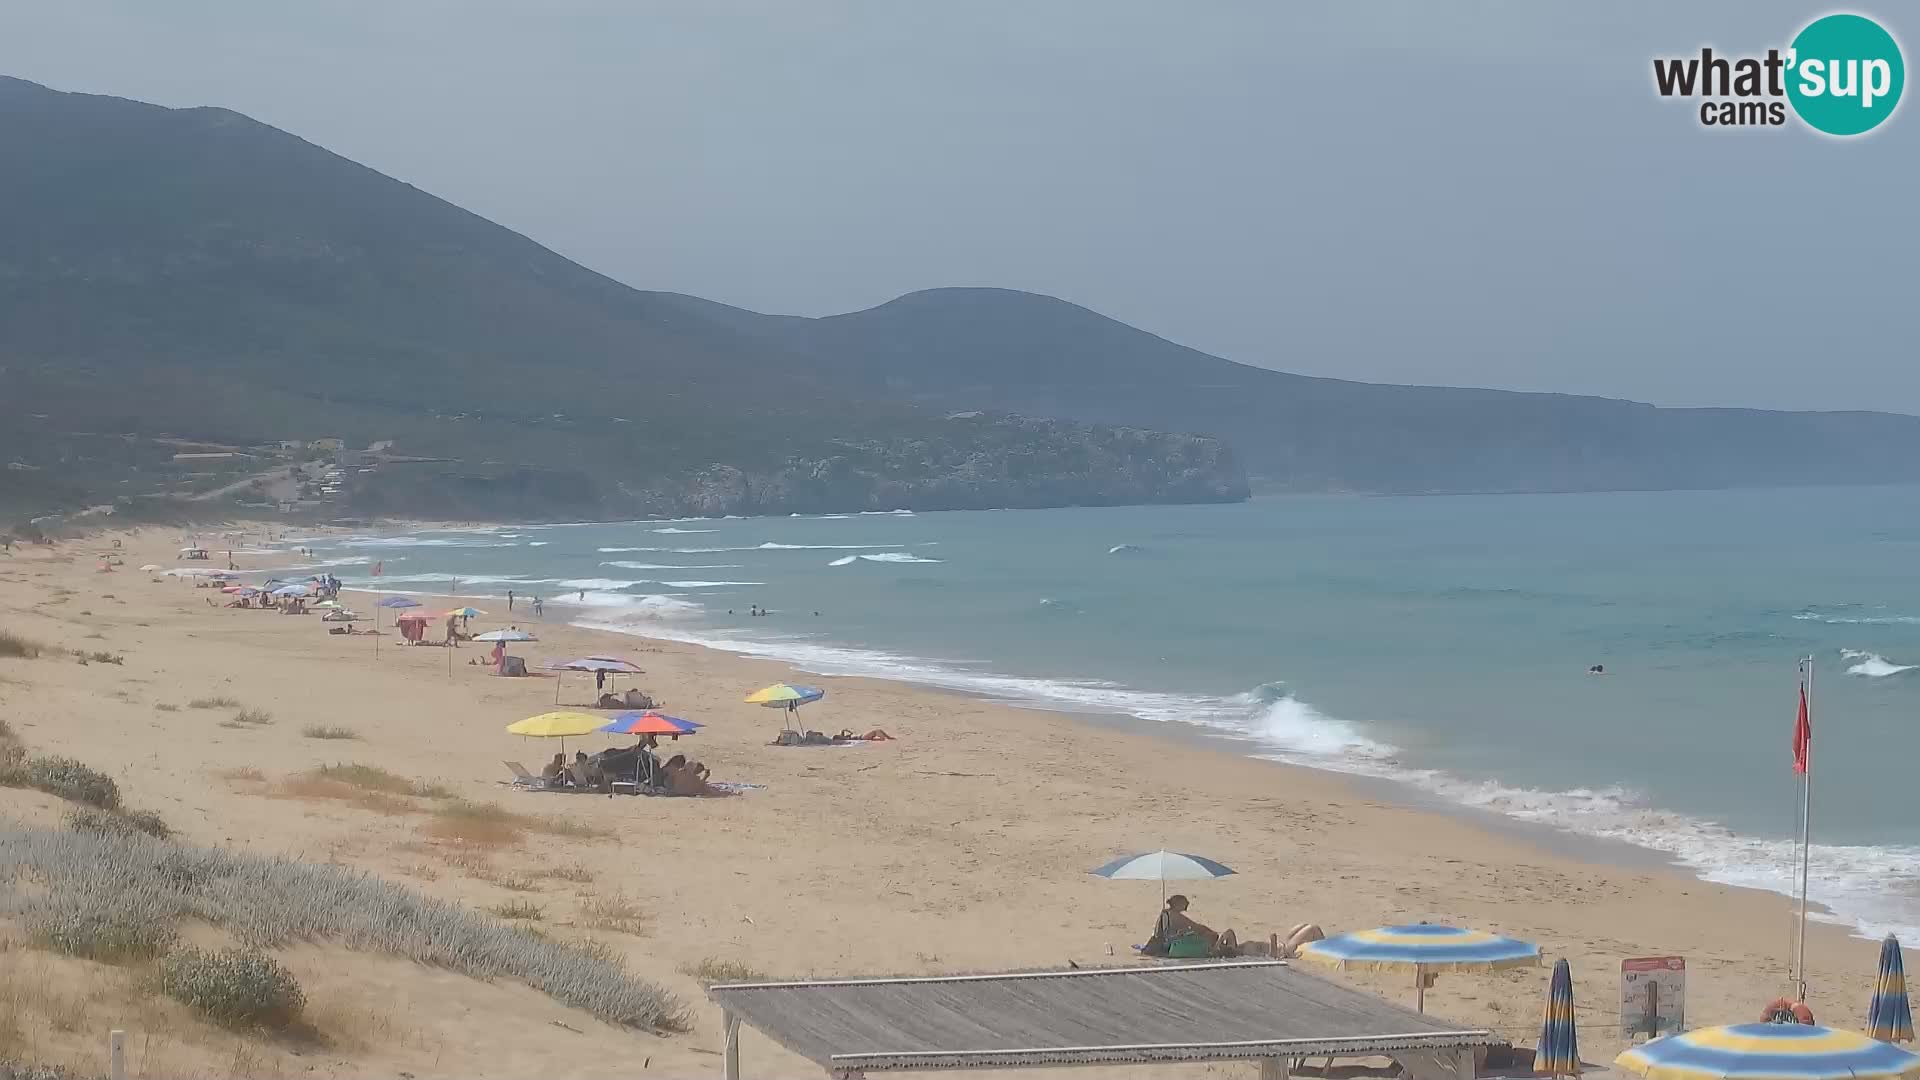 Webcam en vivo de la playa de San Nicolò en Buggerru, Cerdeña – admira las olas y los atardeceres